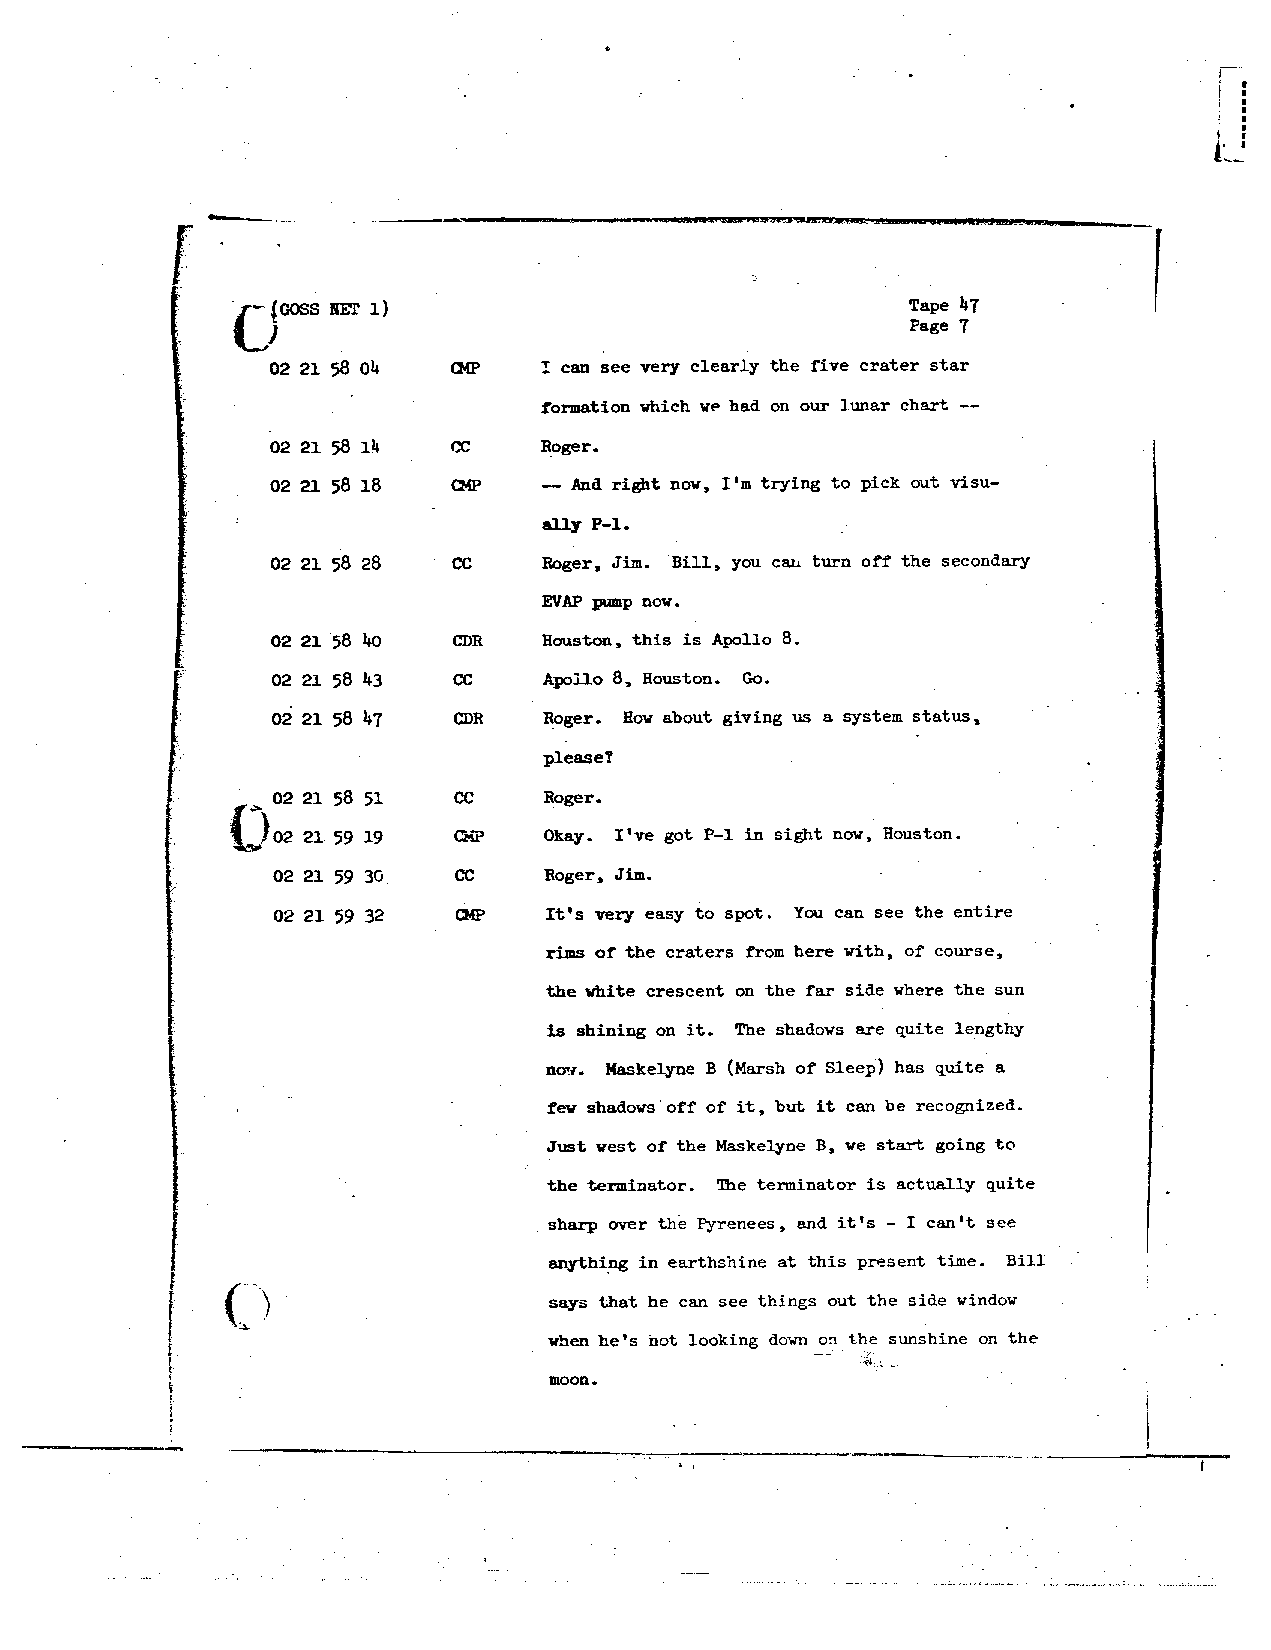 Page 364 of Apollo 8’s original transcript